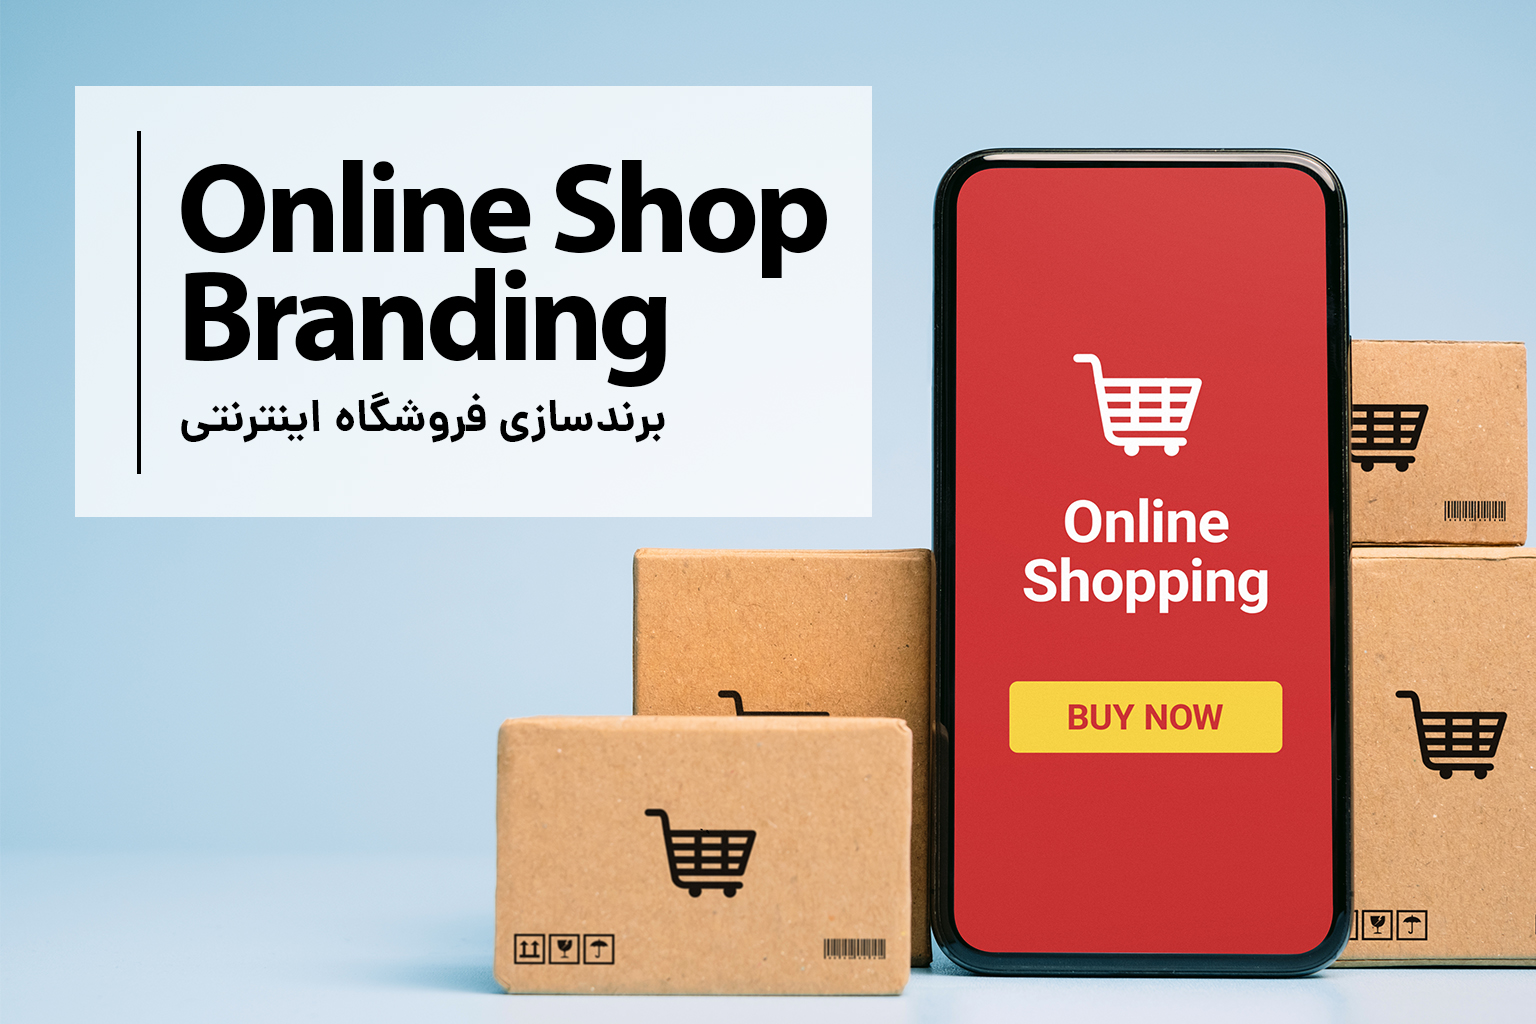 Online shop branding